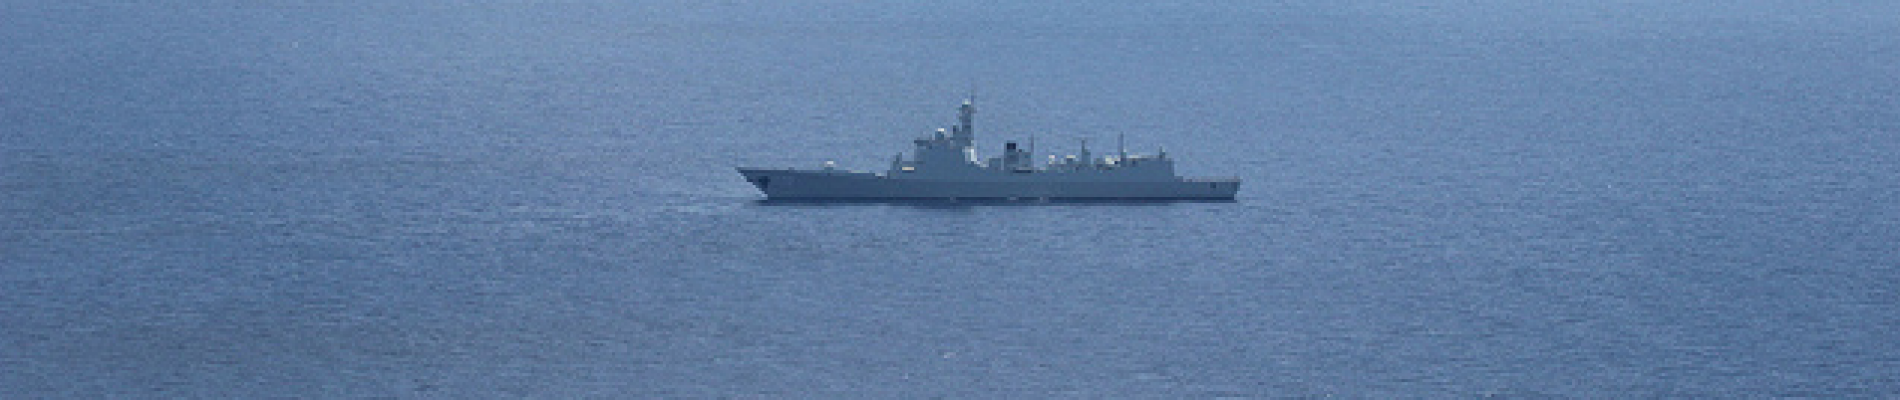 Chinees marineschip gespot in de wateren van de Zuid-Chinese Zee.